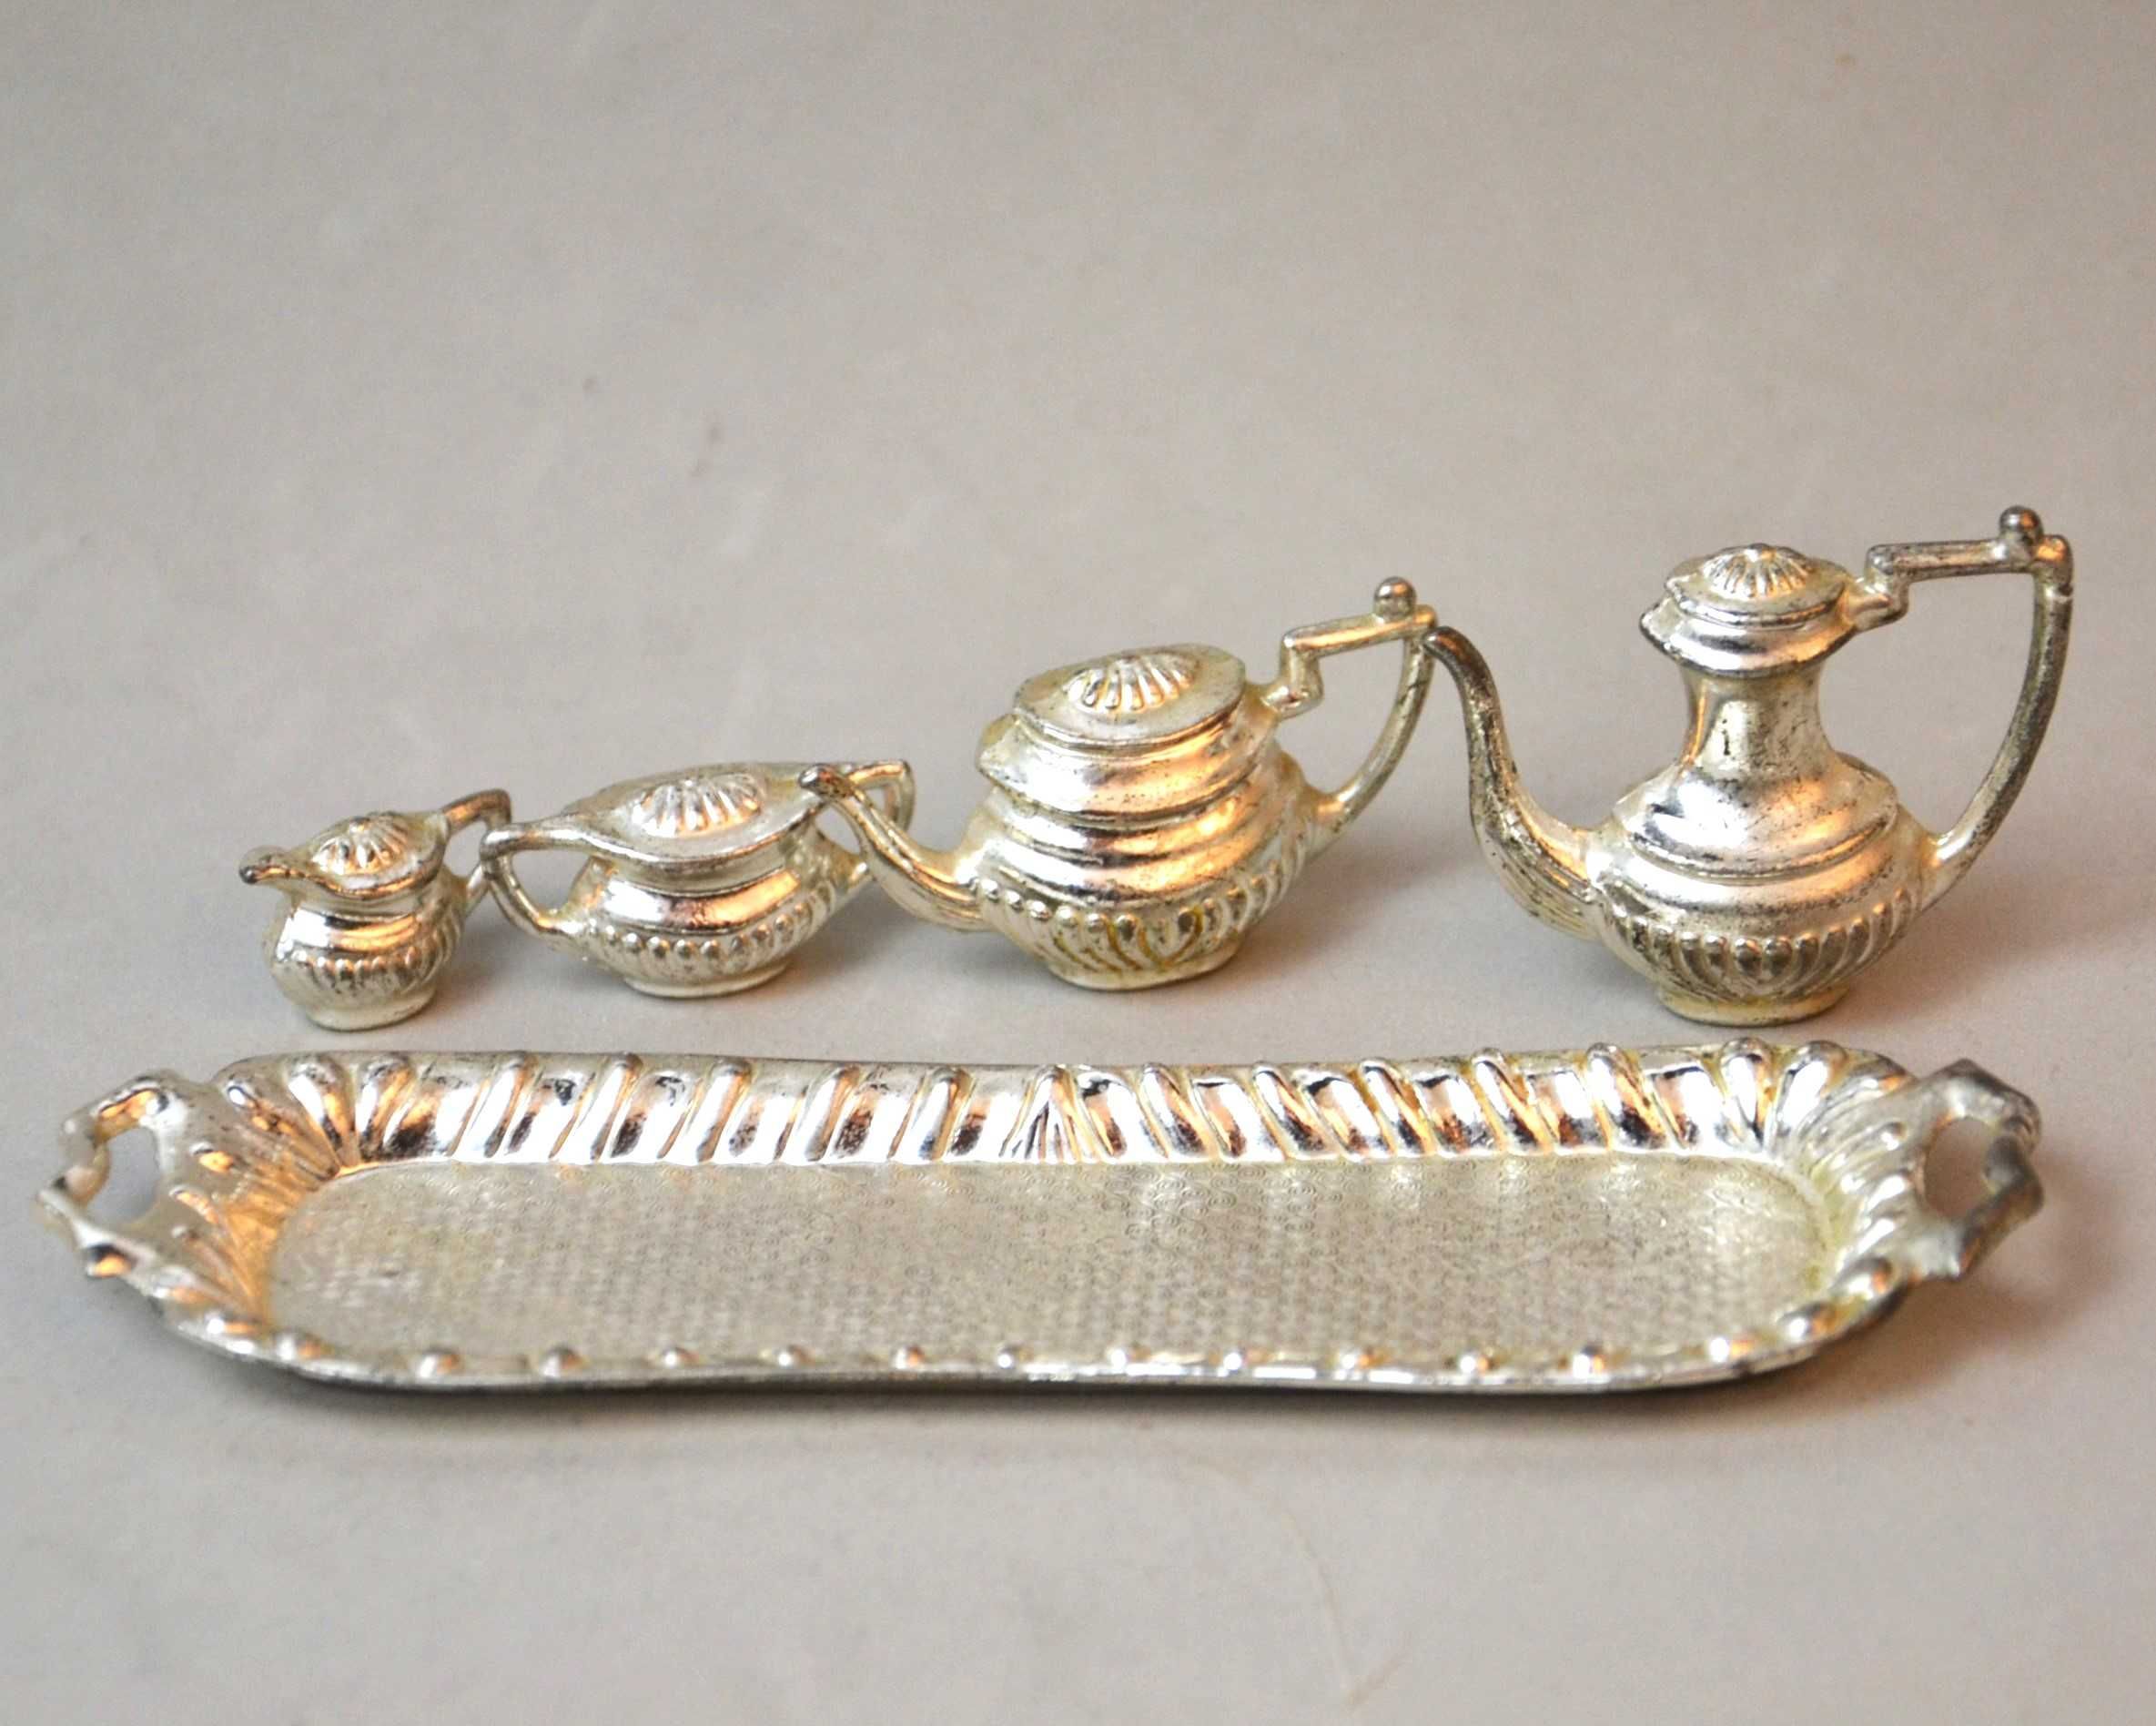 Miniaturowy serwis do herbaty w srebrnym kolorze Anglia lata 70te